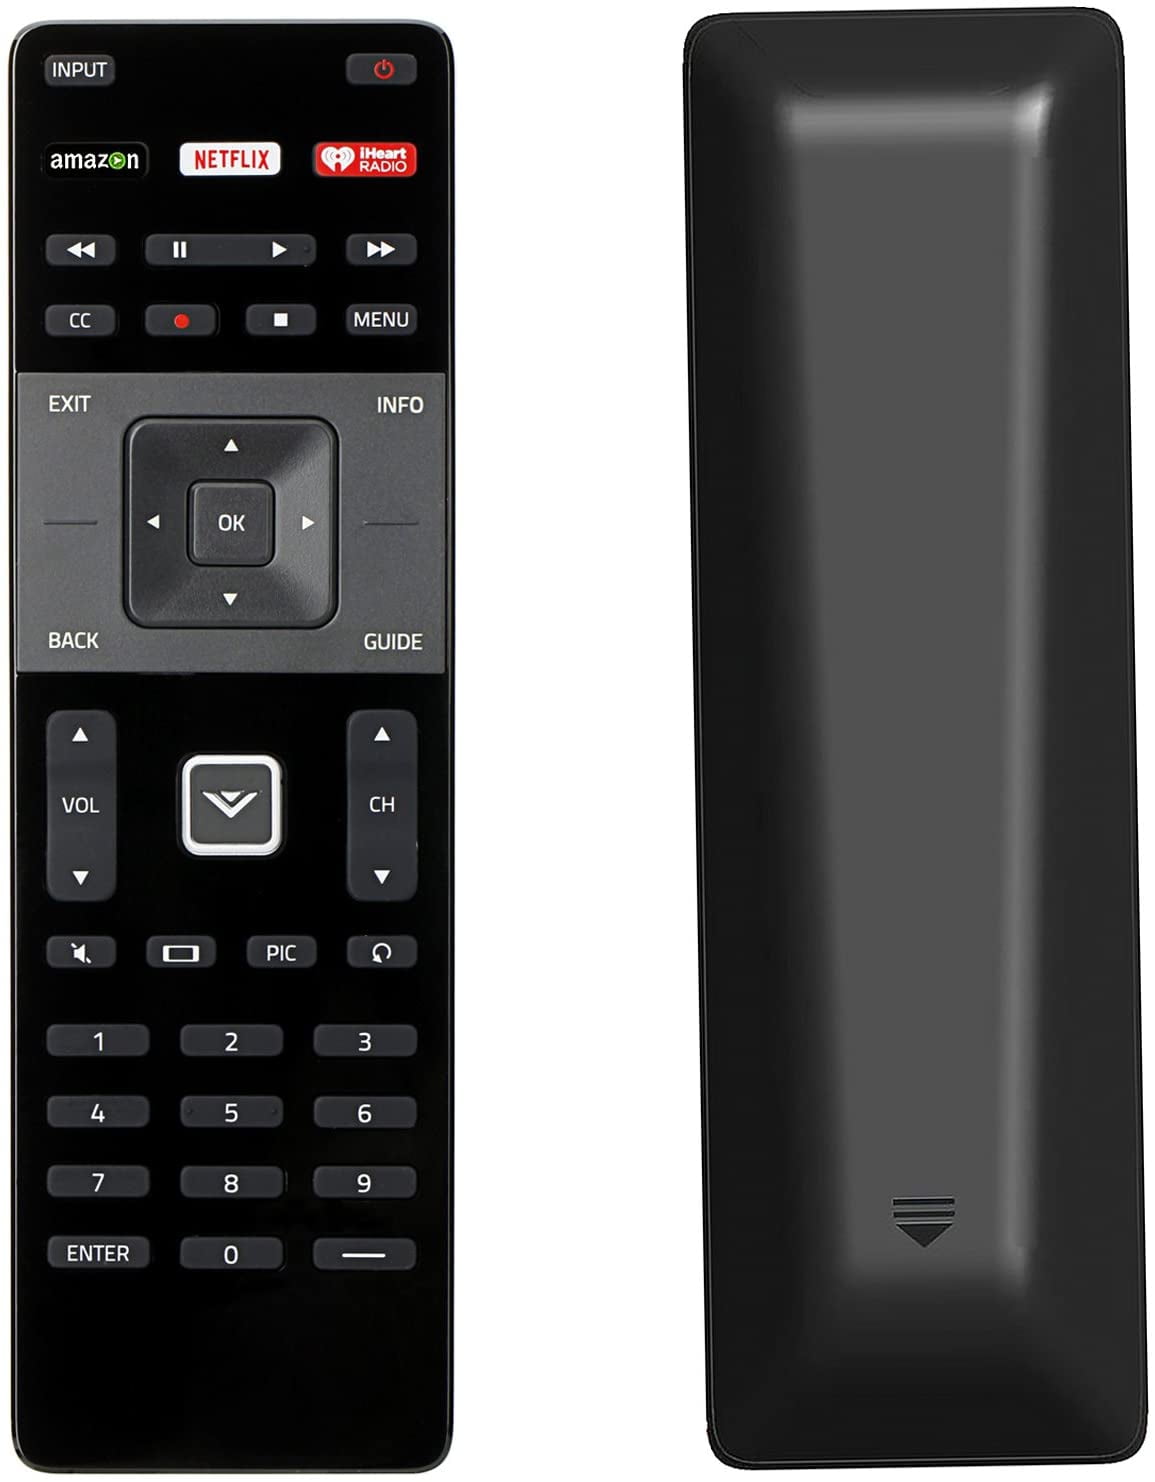 New Xrt122 Remote Fit For Vizio Tv D50f E1 D55f E0 D55f E2 E40c2 E65x